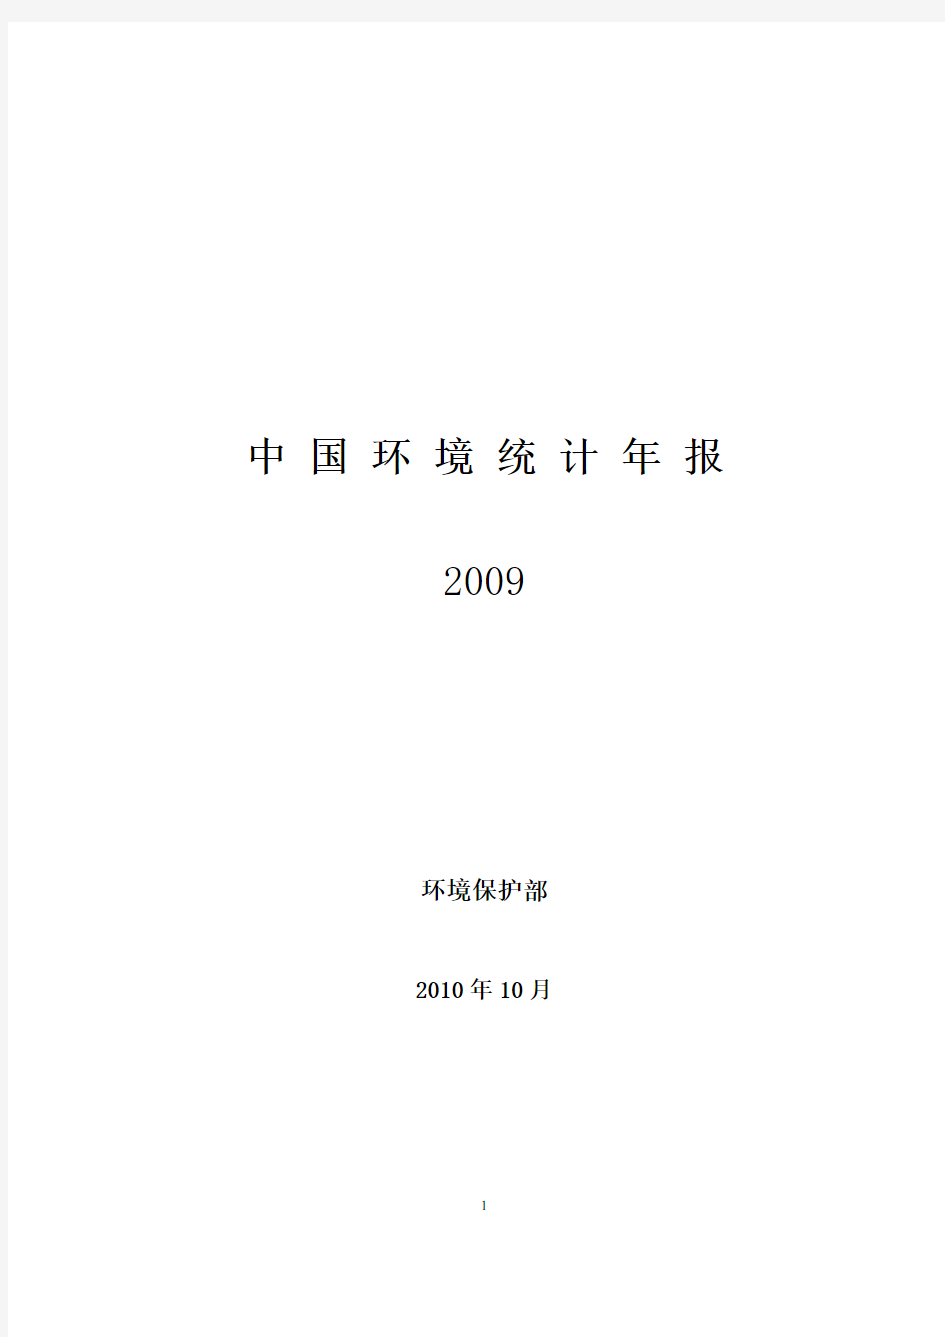 2009年中国环境统计年报